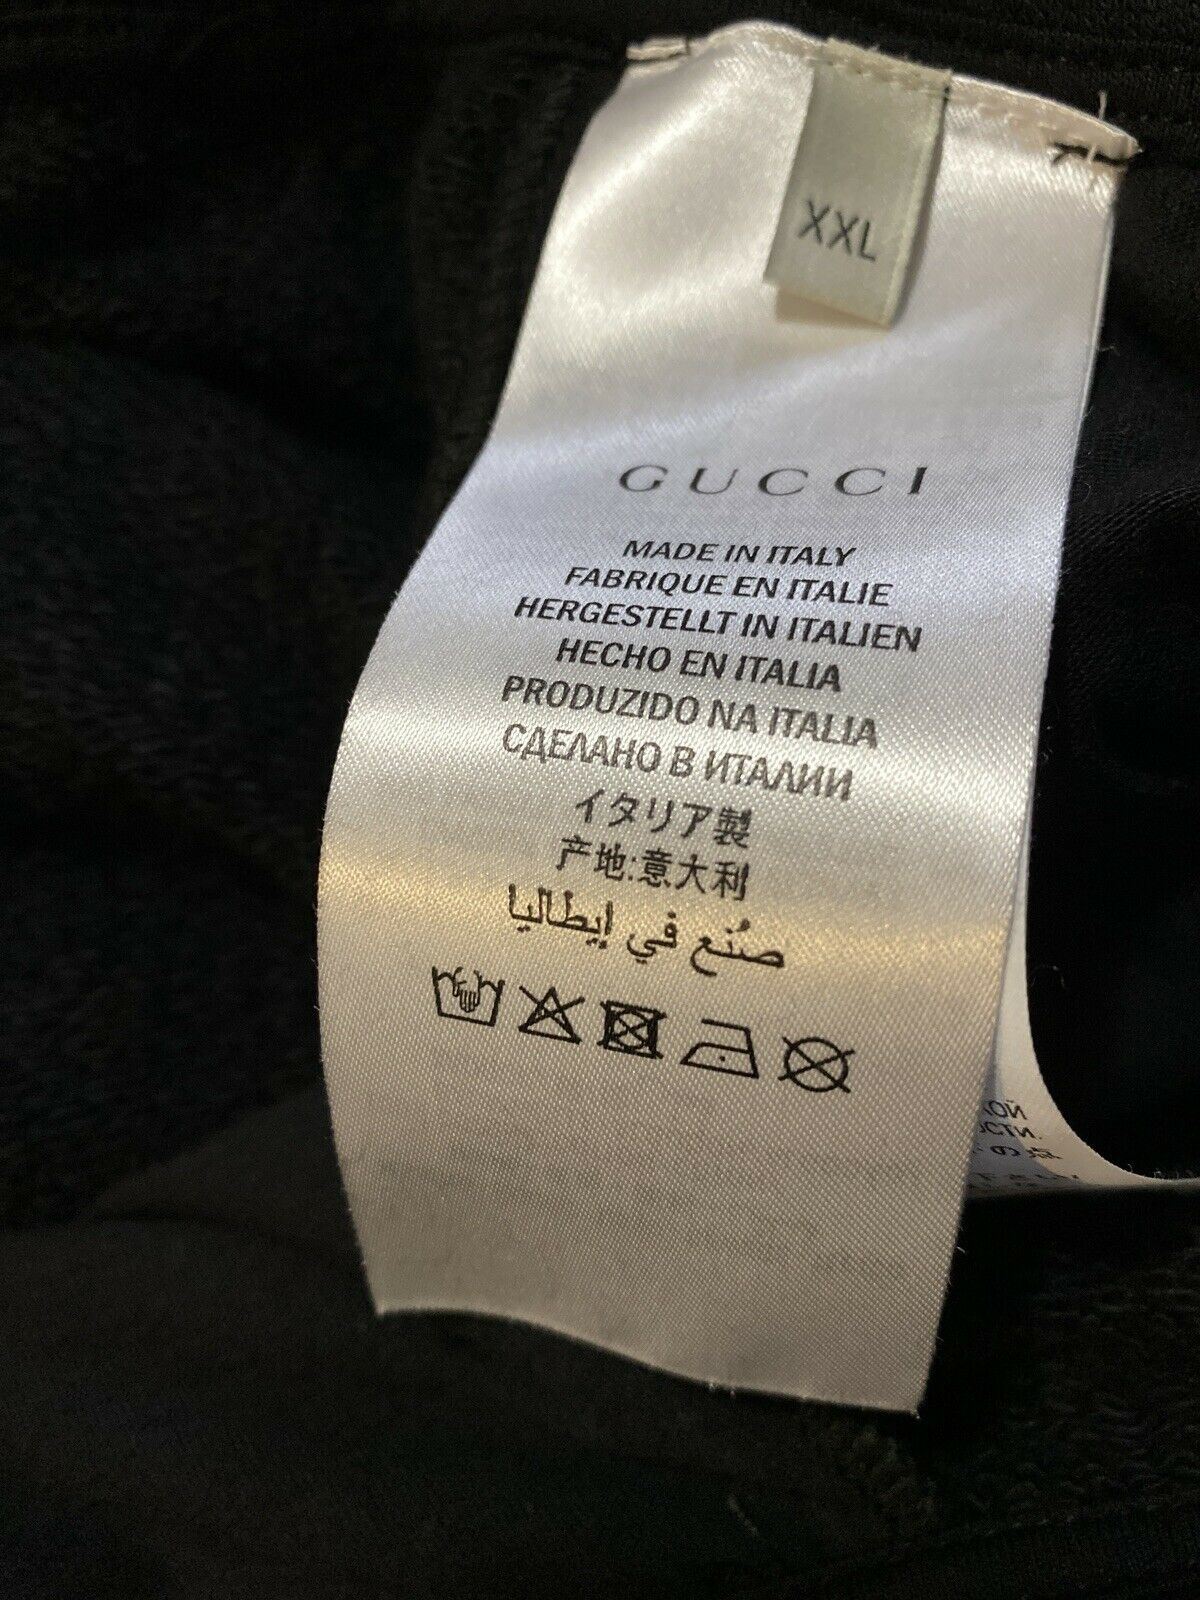 Neu mit Etikett: 875 $ Gucci Herren-Trainingshose, Schwarz, Größe XXL, hergestellt in Italien